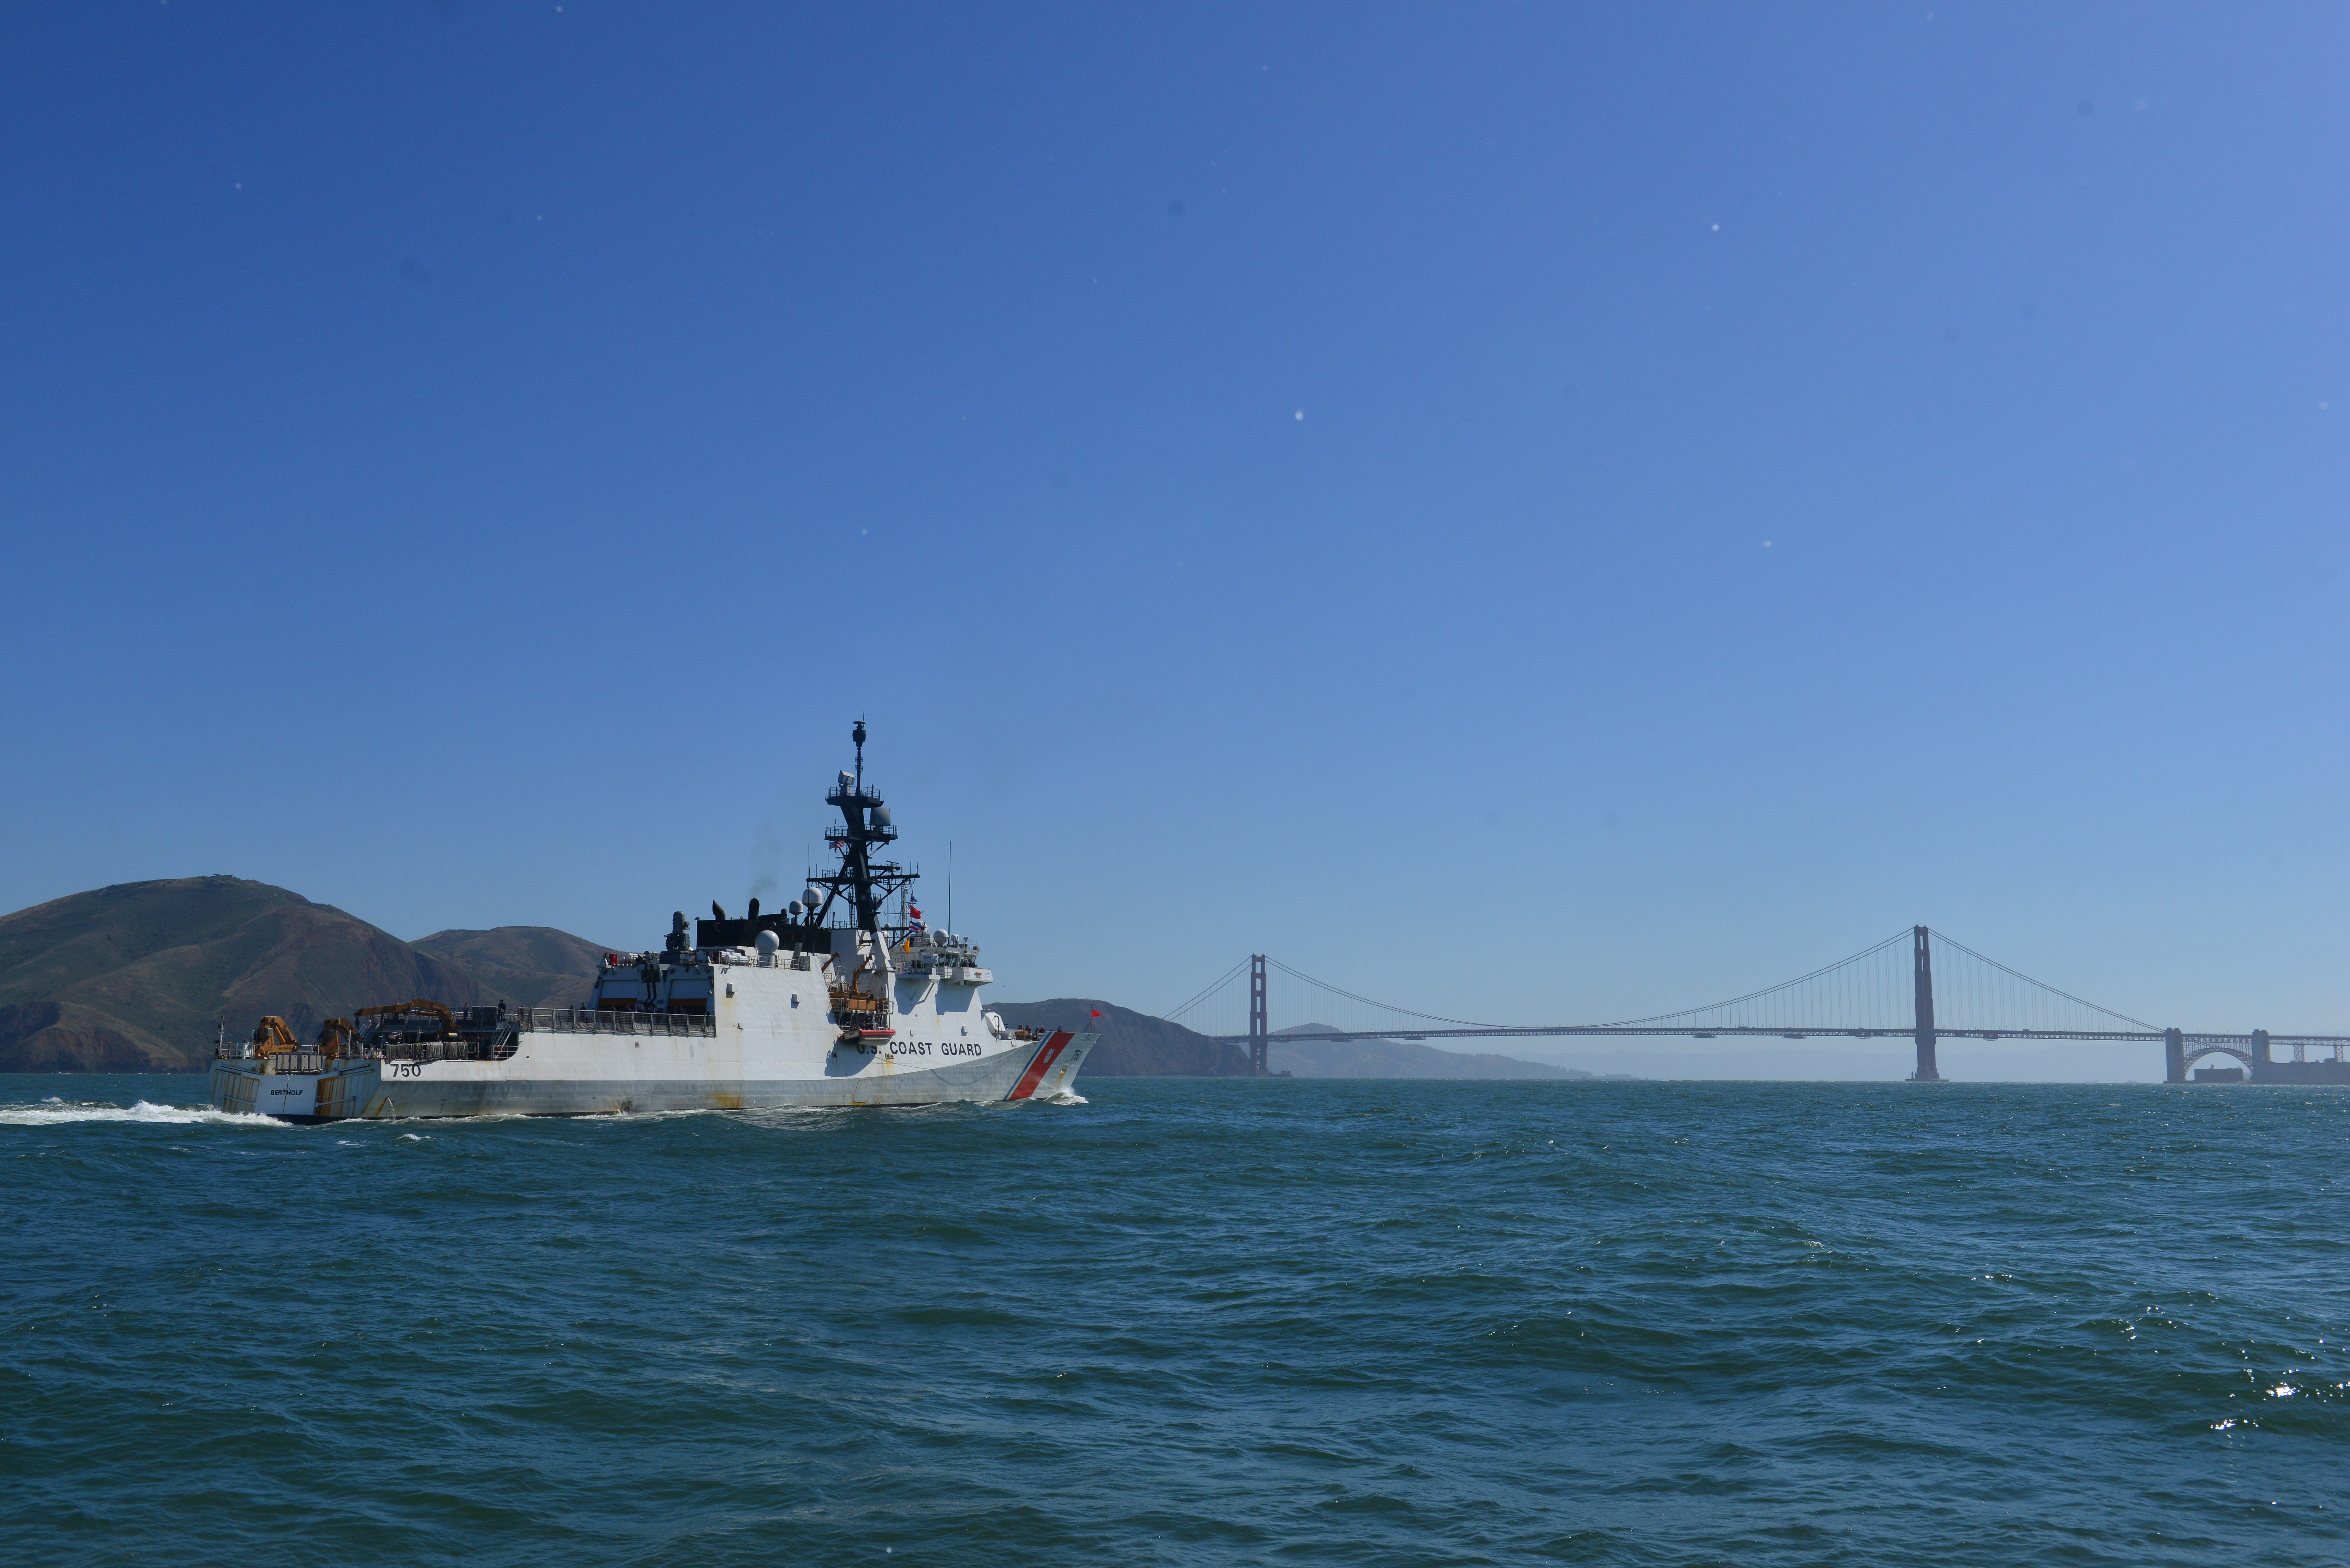 Coast Guard Cutter near the Golden Gate Bridge